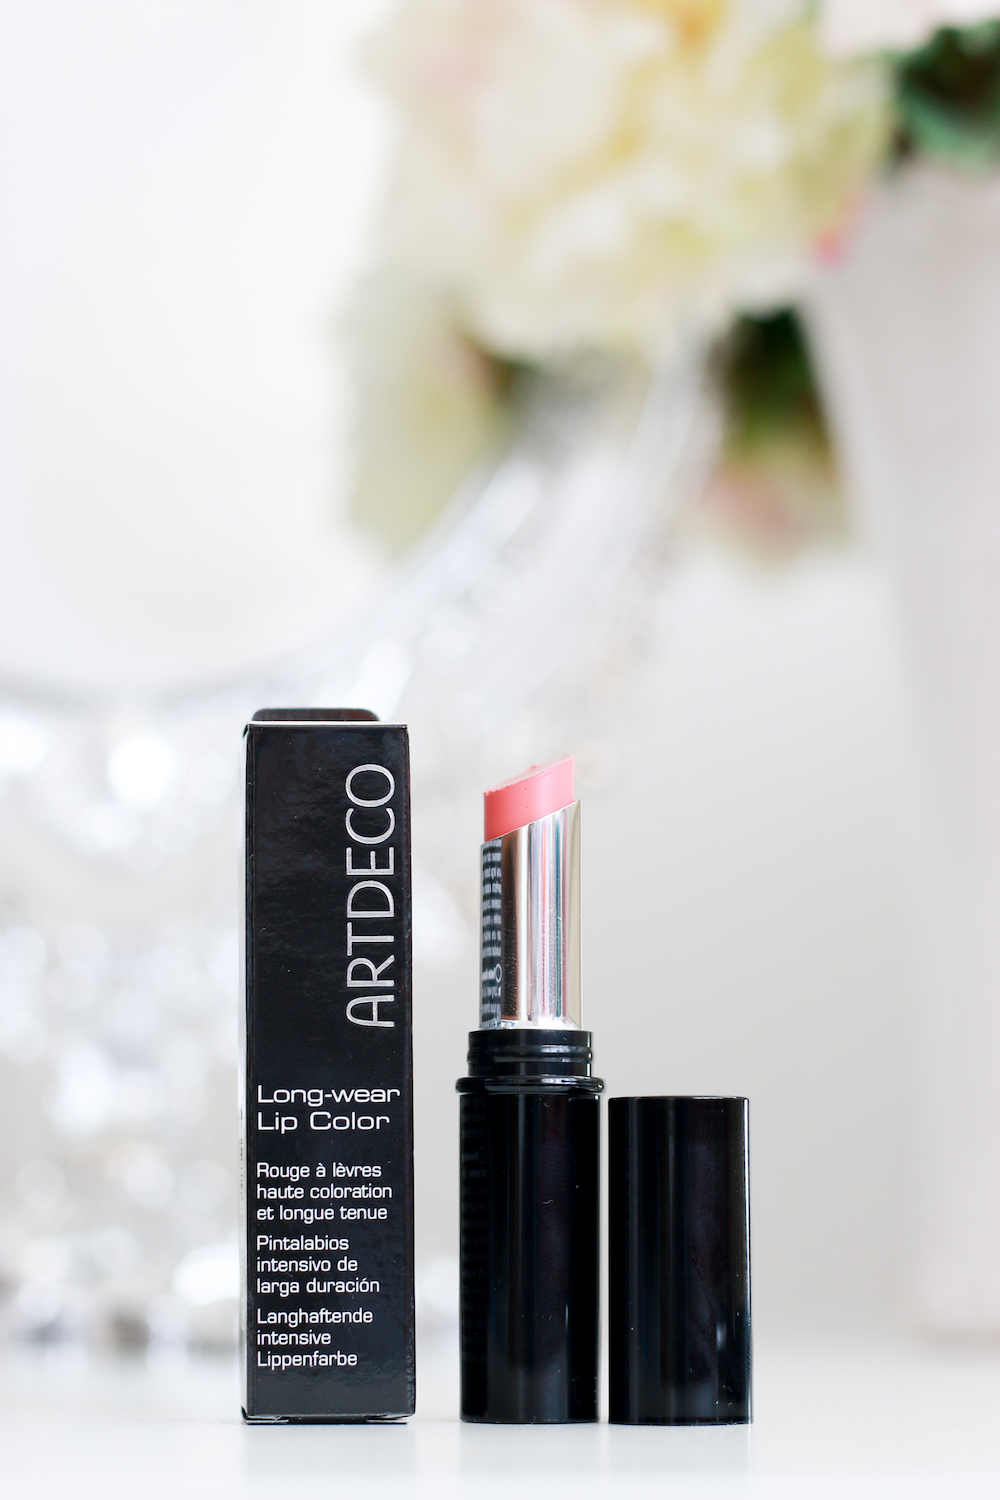 artdeco-longwear-lip-color-review-test